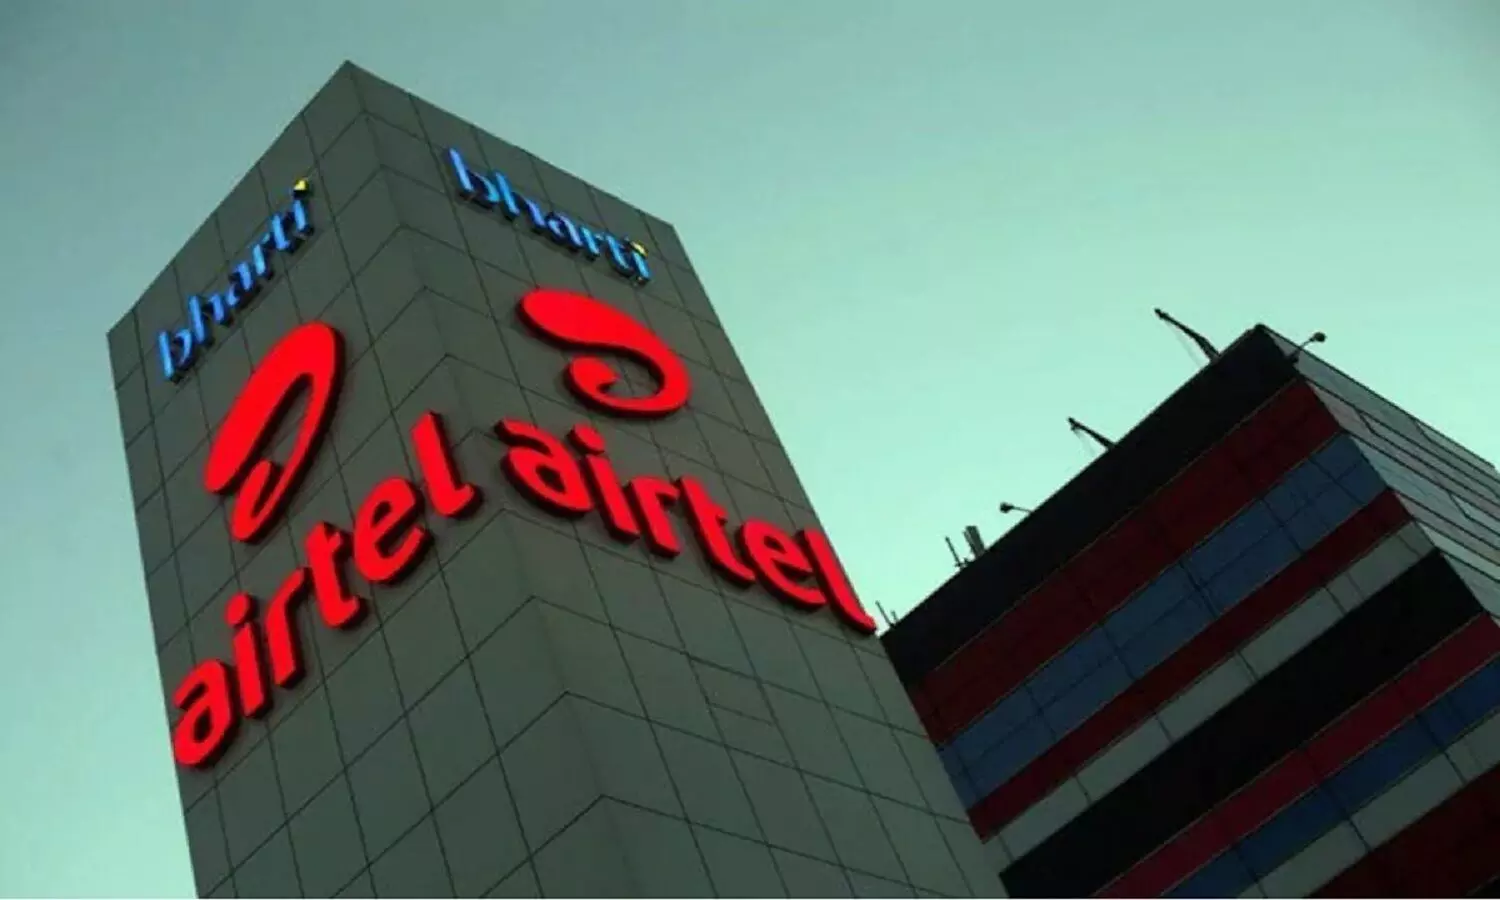 Airtel इस साल अपने रिचार्ज पैक्स महंगे कर देगी, सभी प्लांस के रेट बढ़ेंगे